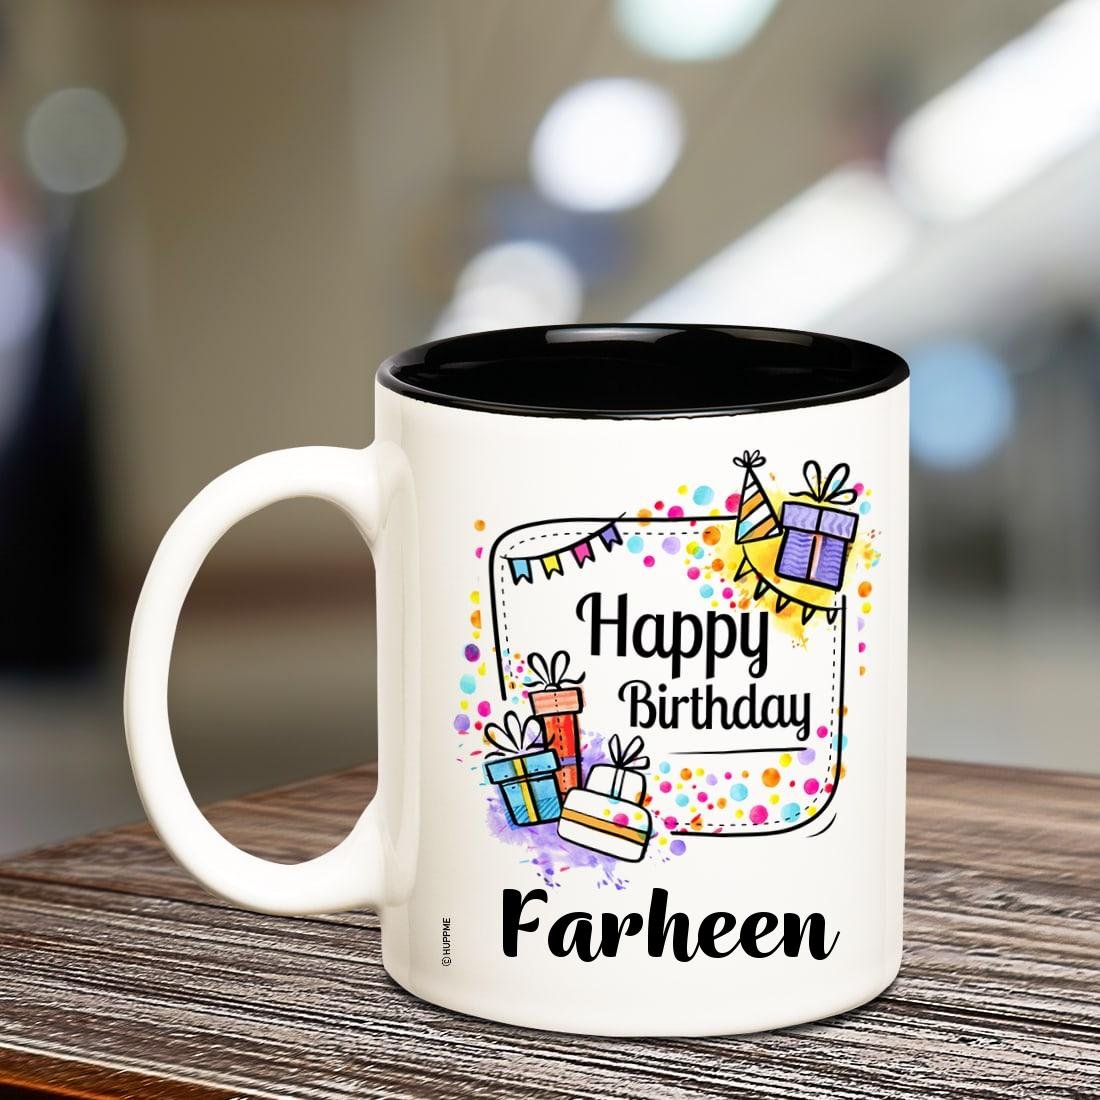 happy birthday mug